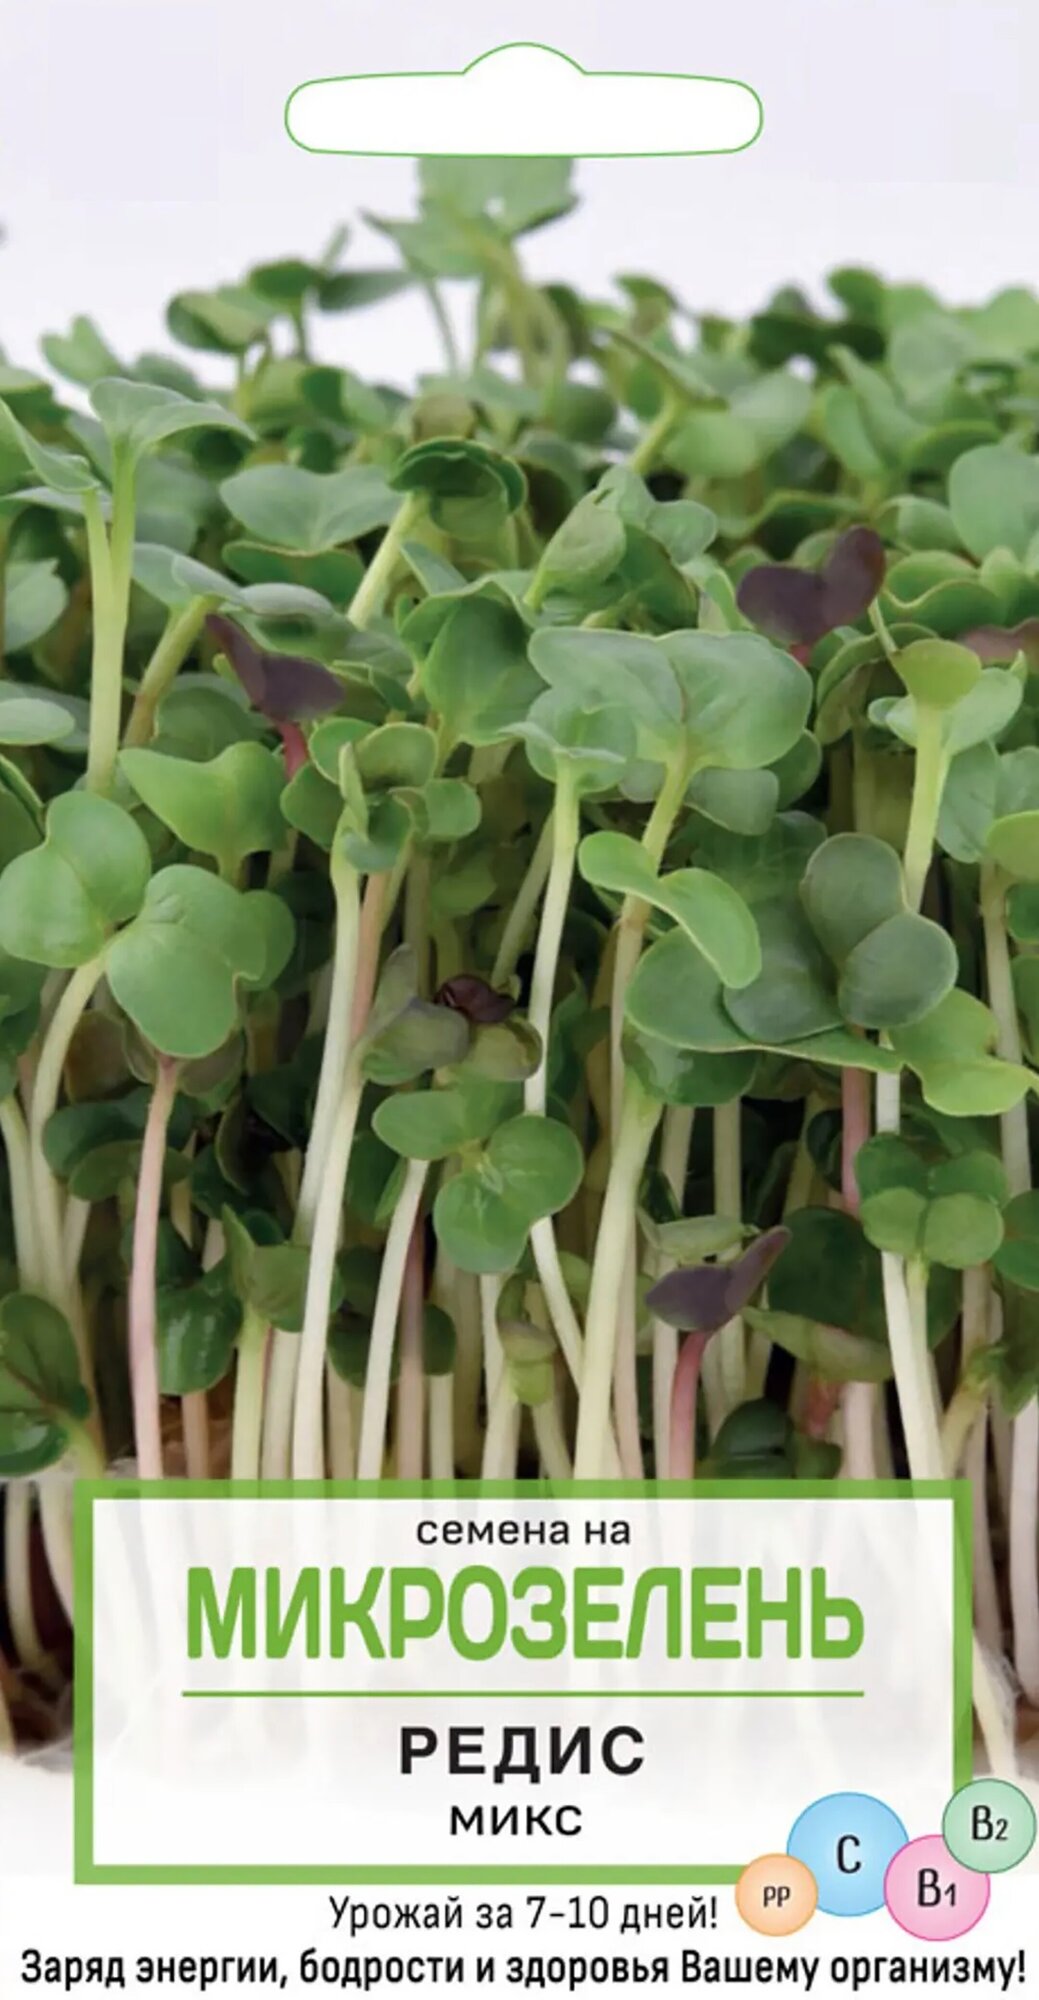 Семена Микрозелень "Редис" микс. Зелень может применяться в качестве витаминной добавки для салатов, соусов, мясных, рыбных блюд и супов. Подходит для выращивания в домашних условиях круглый год.